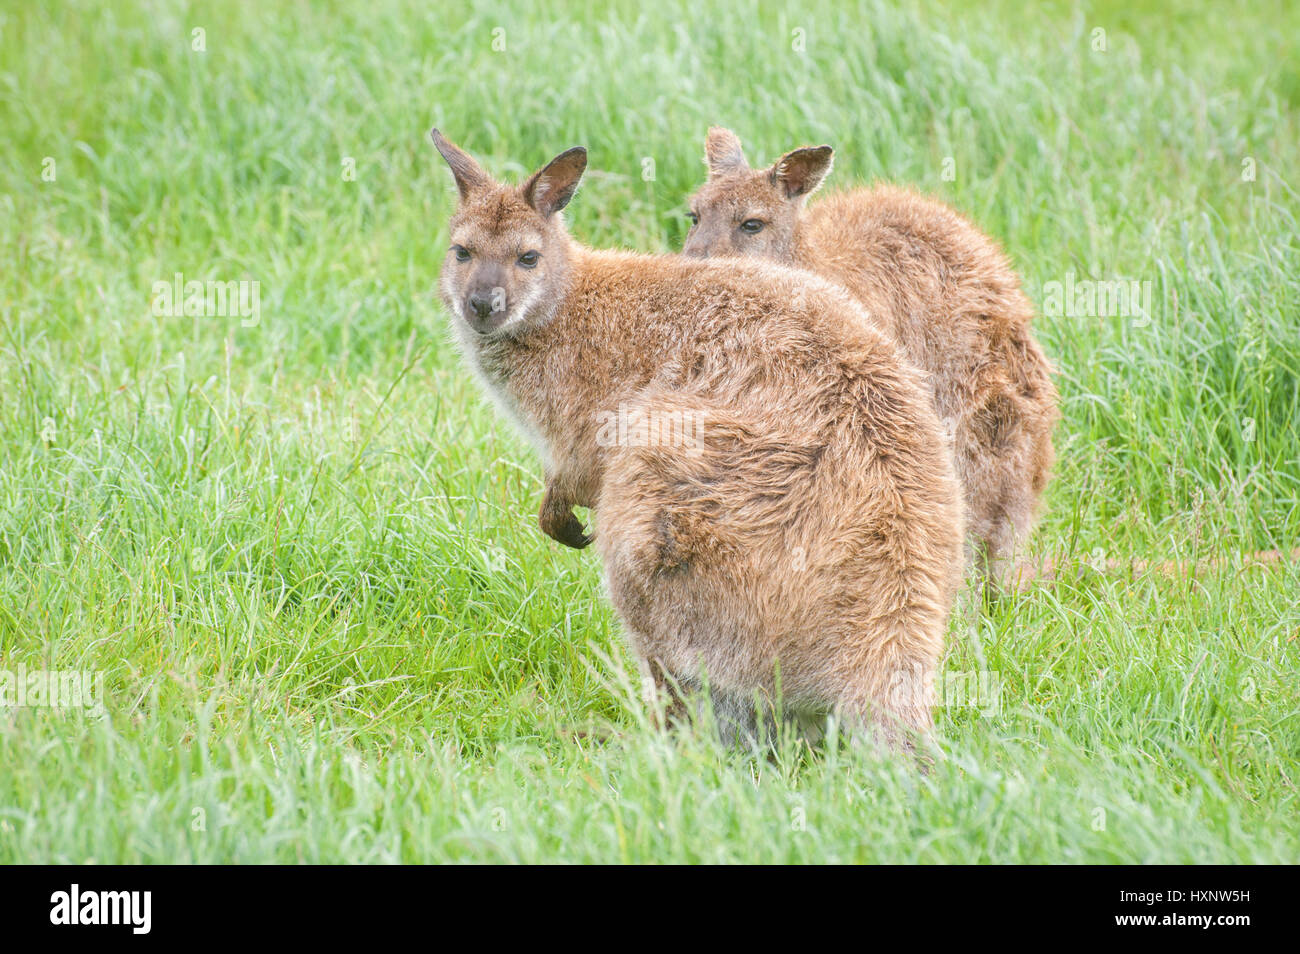 zwei junge Kängurus in einer Grünland-Umgebung Stockfoto